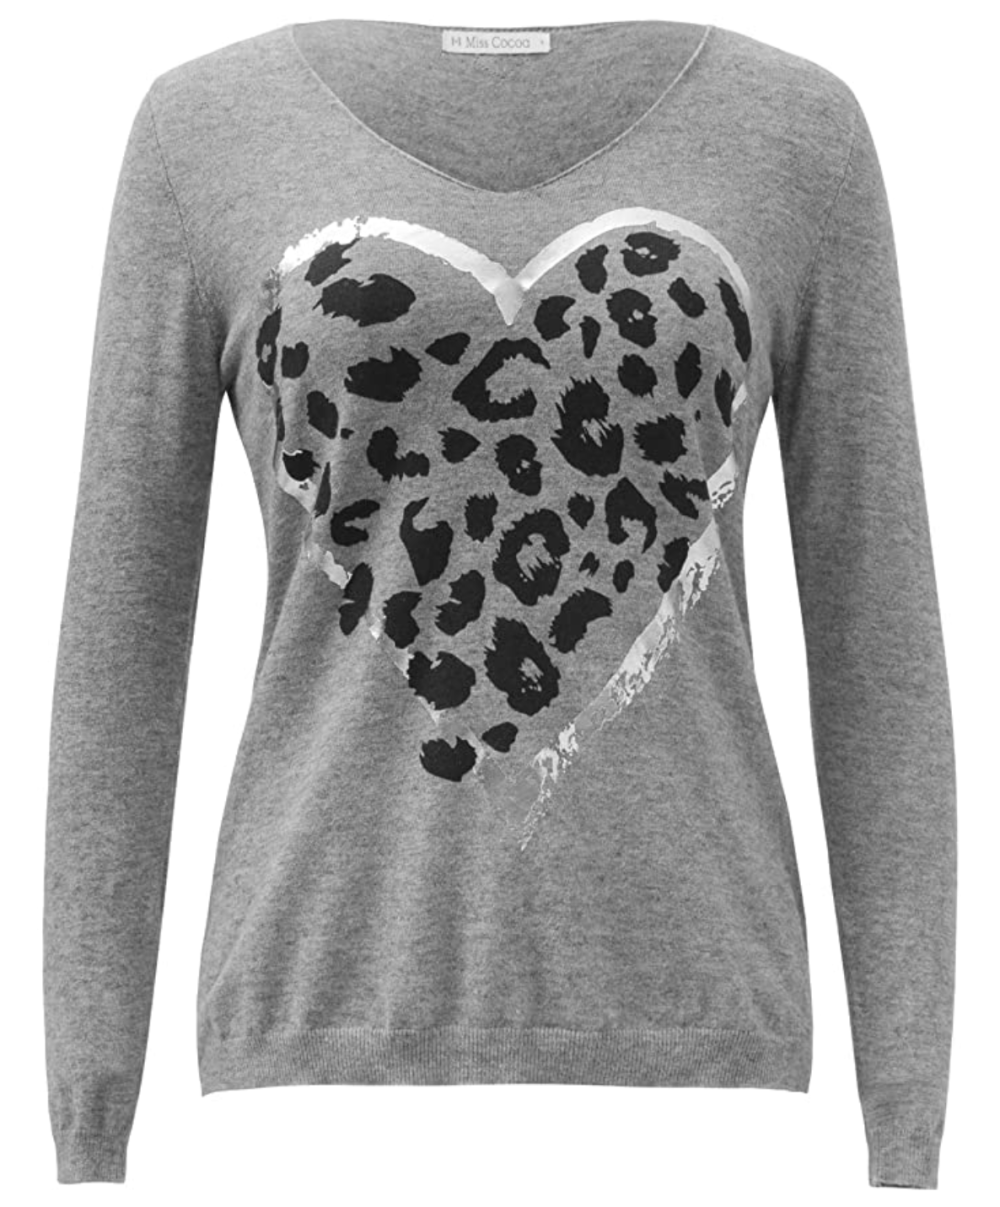 Miss Cocoa Jeans Women's Heart Leopard Print Sweater